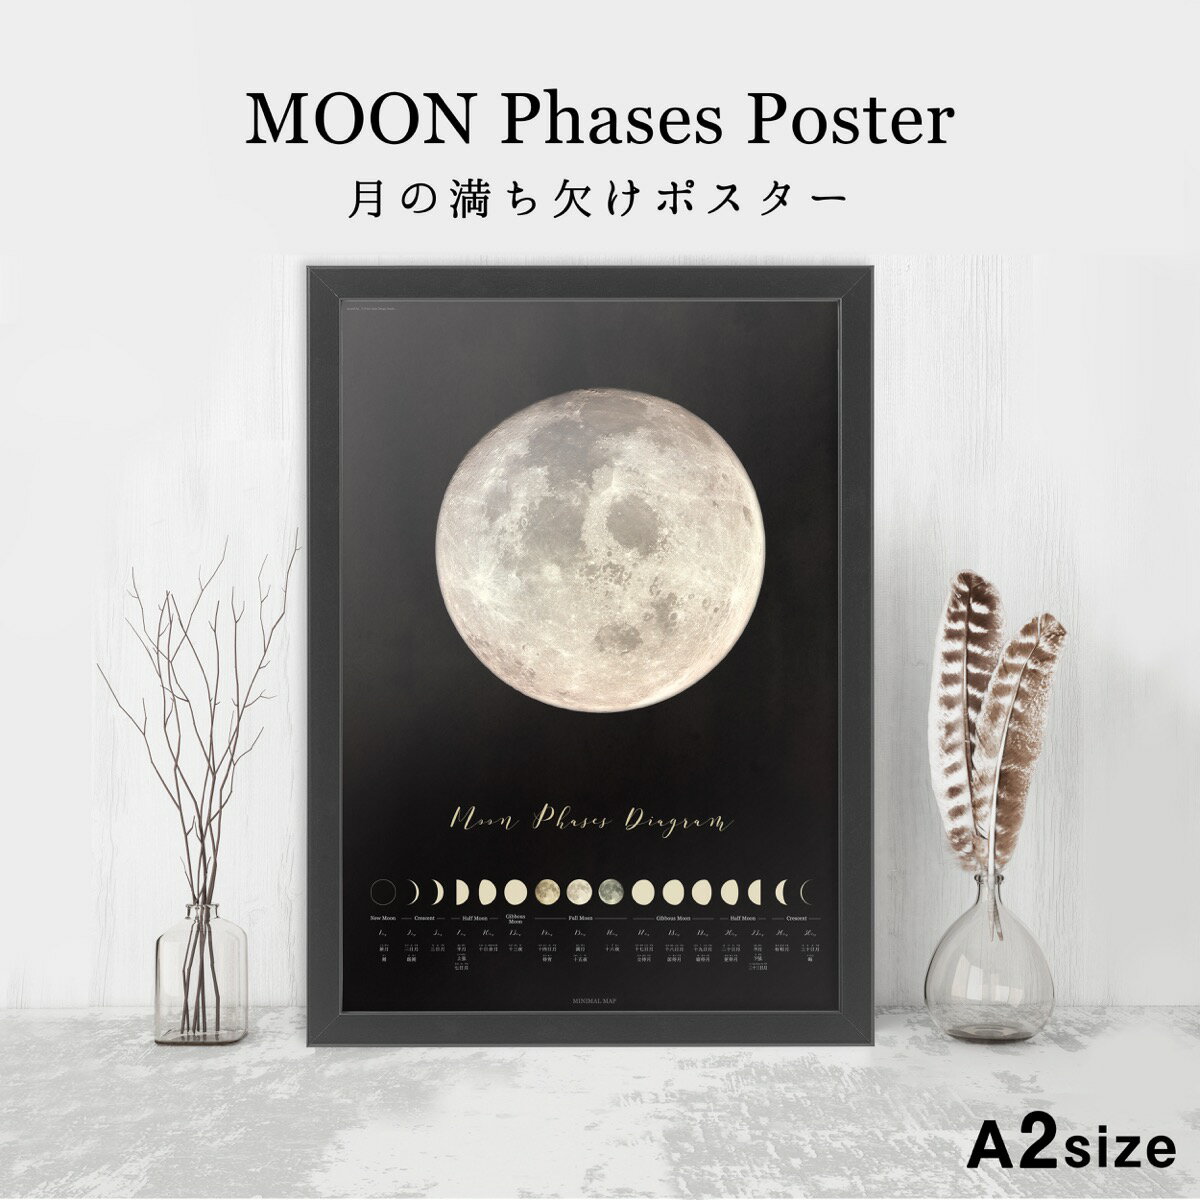 月の満ち欠けポスター A2 size アートポスター 天体 神秘的 暦 満月 おしゃれ インテリア 大きい 北欧 ミニマルマップ